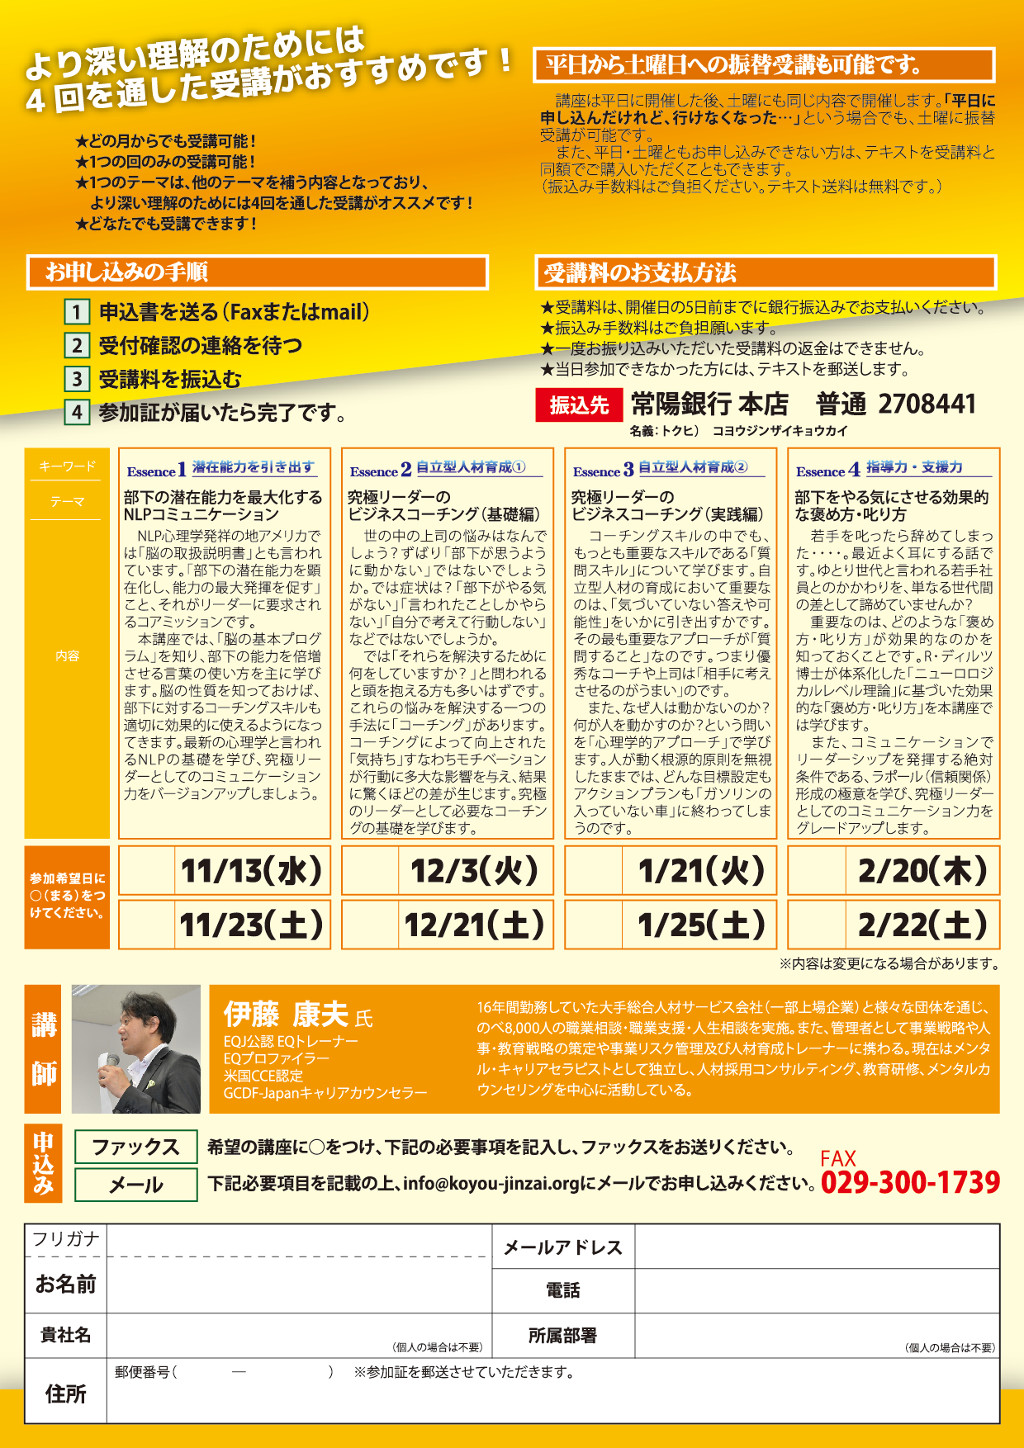 http://koyou-jinzai.org/res/images/leader2013-2ura.jpg